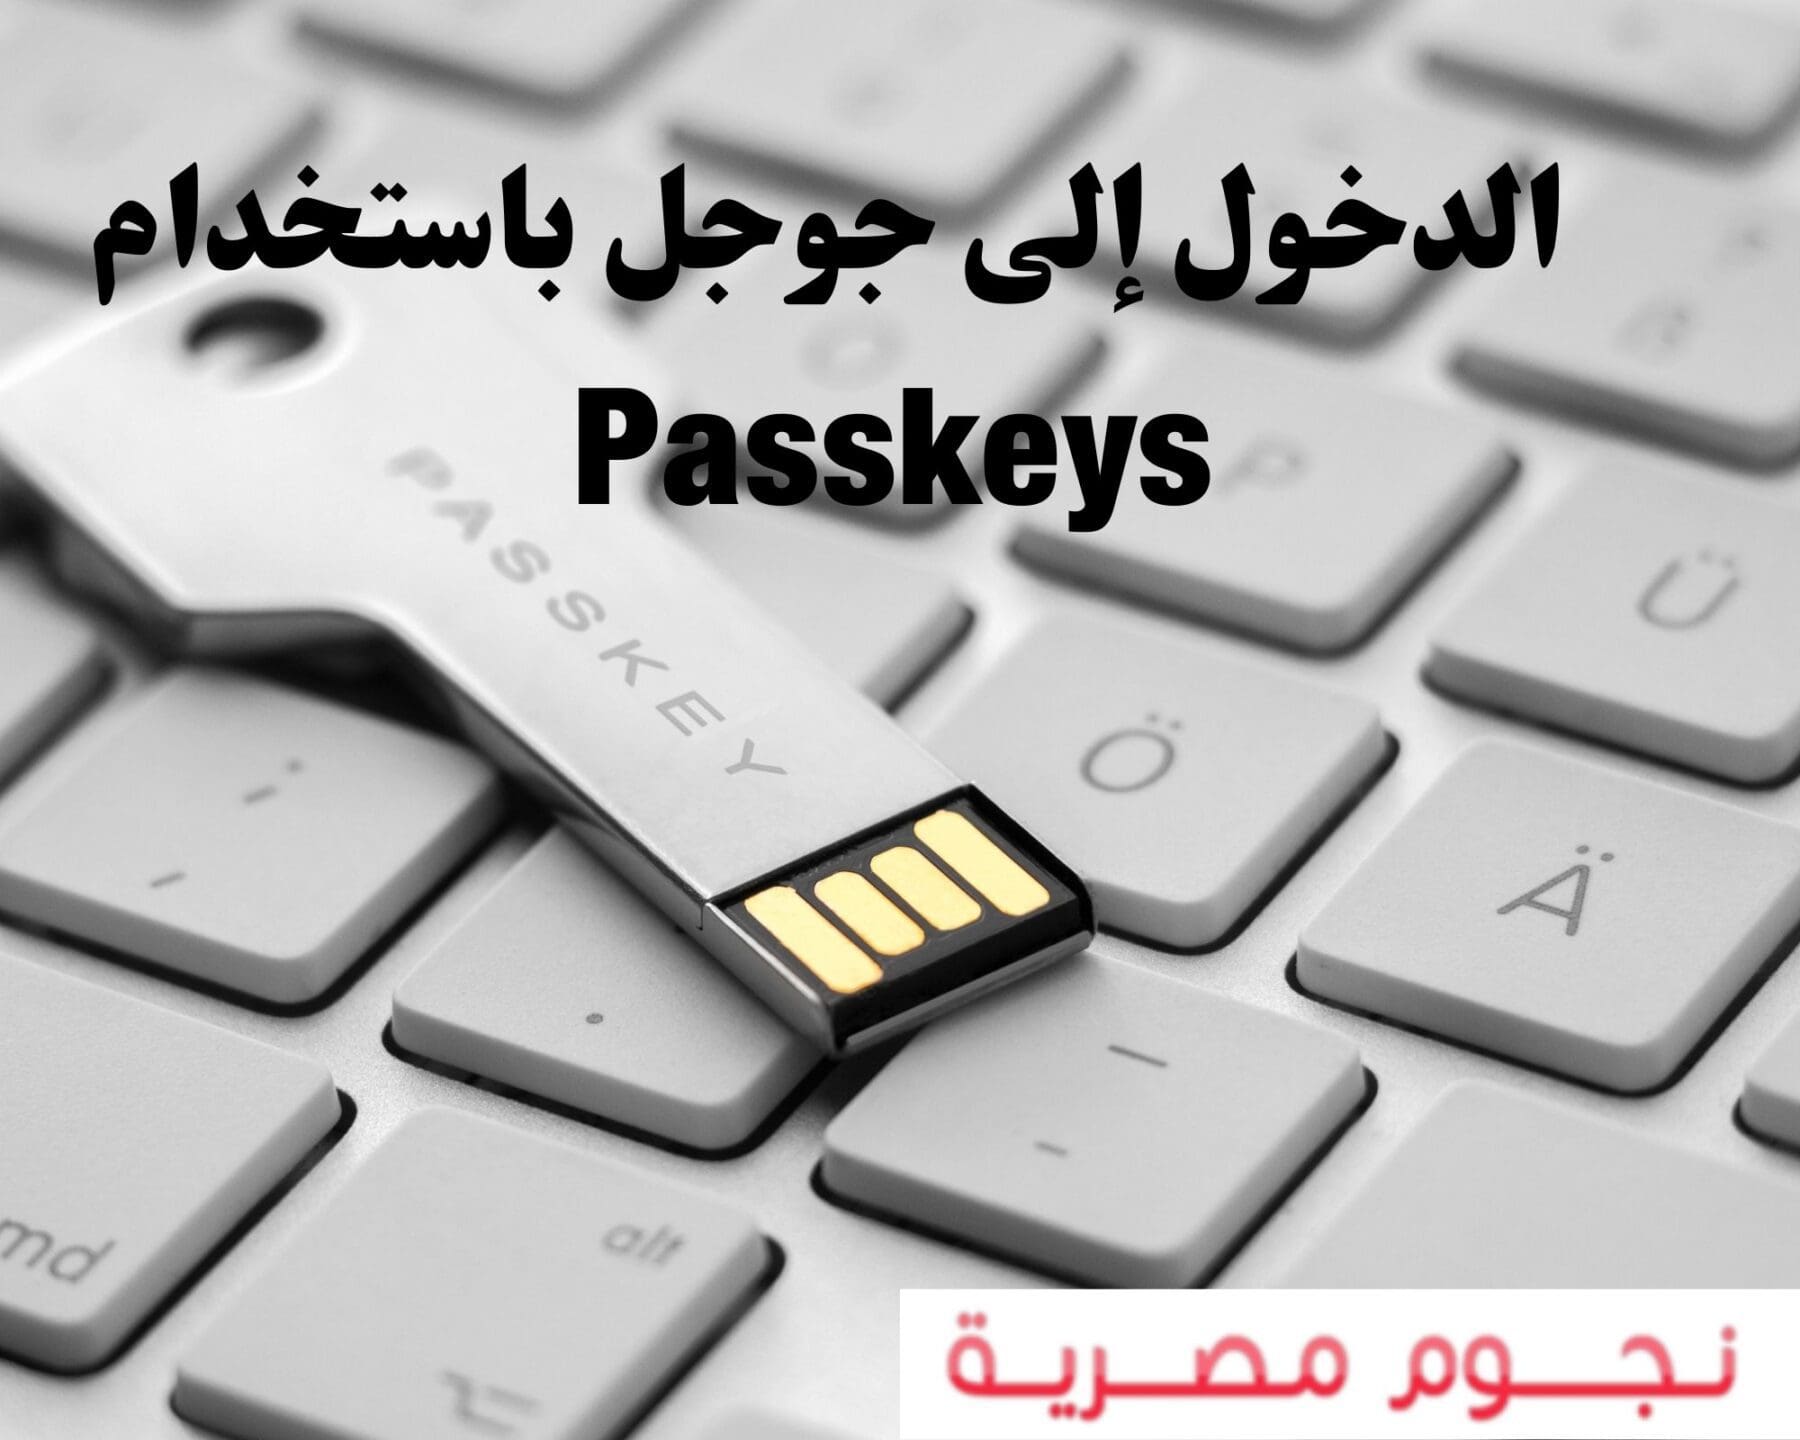 الدخول إلى جوجل باستخدام Passkeys